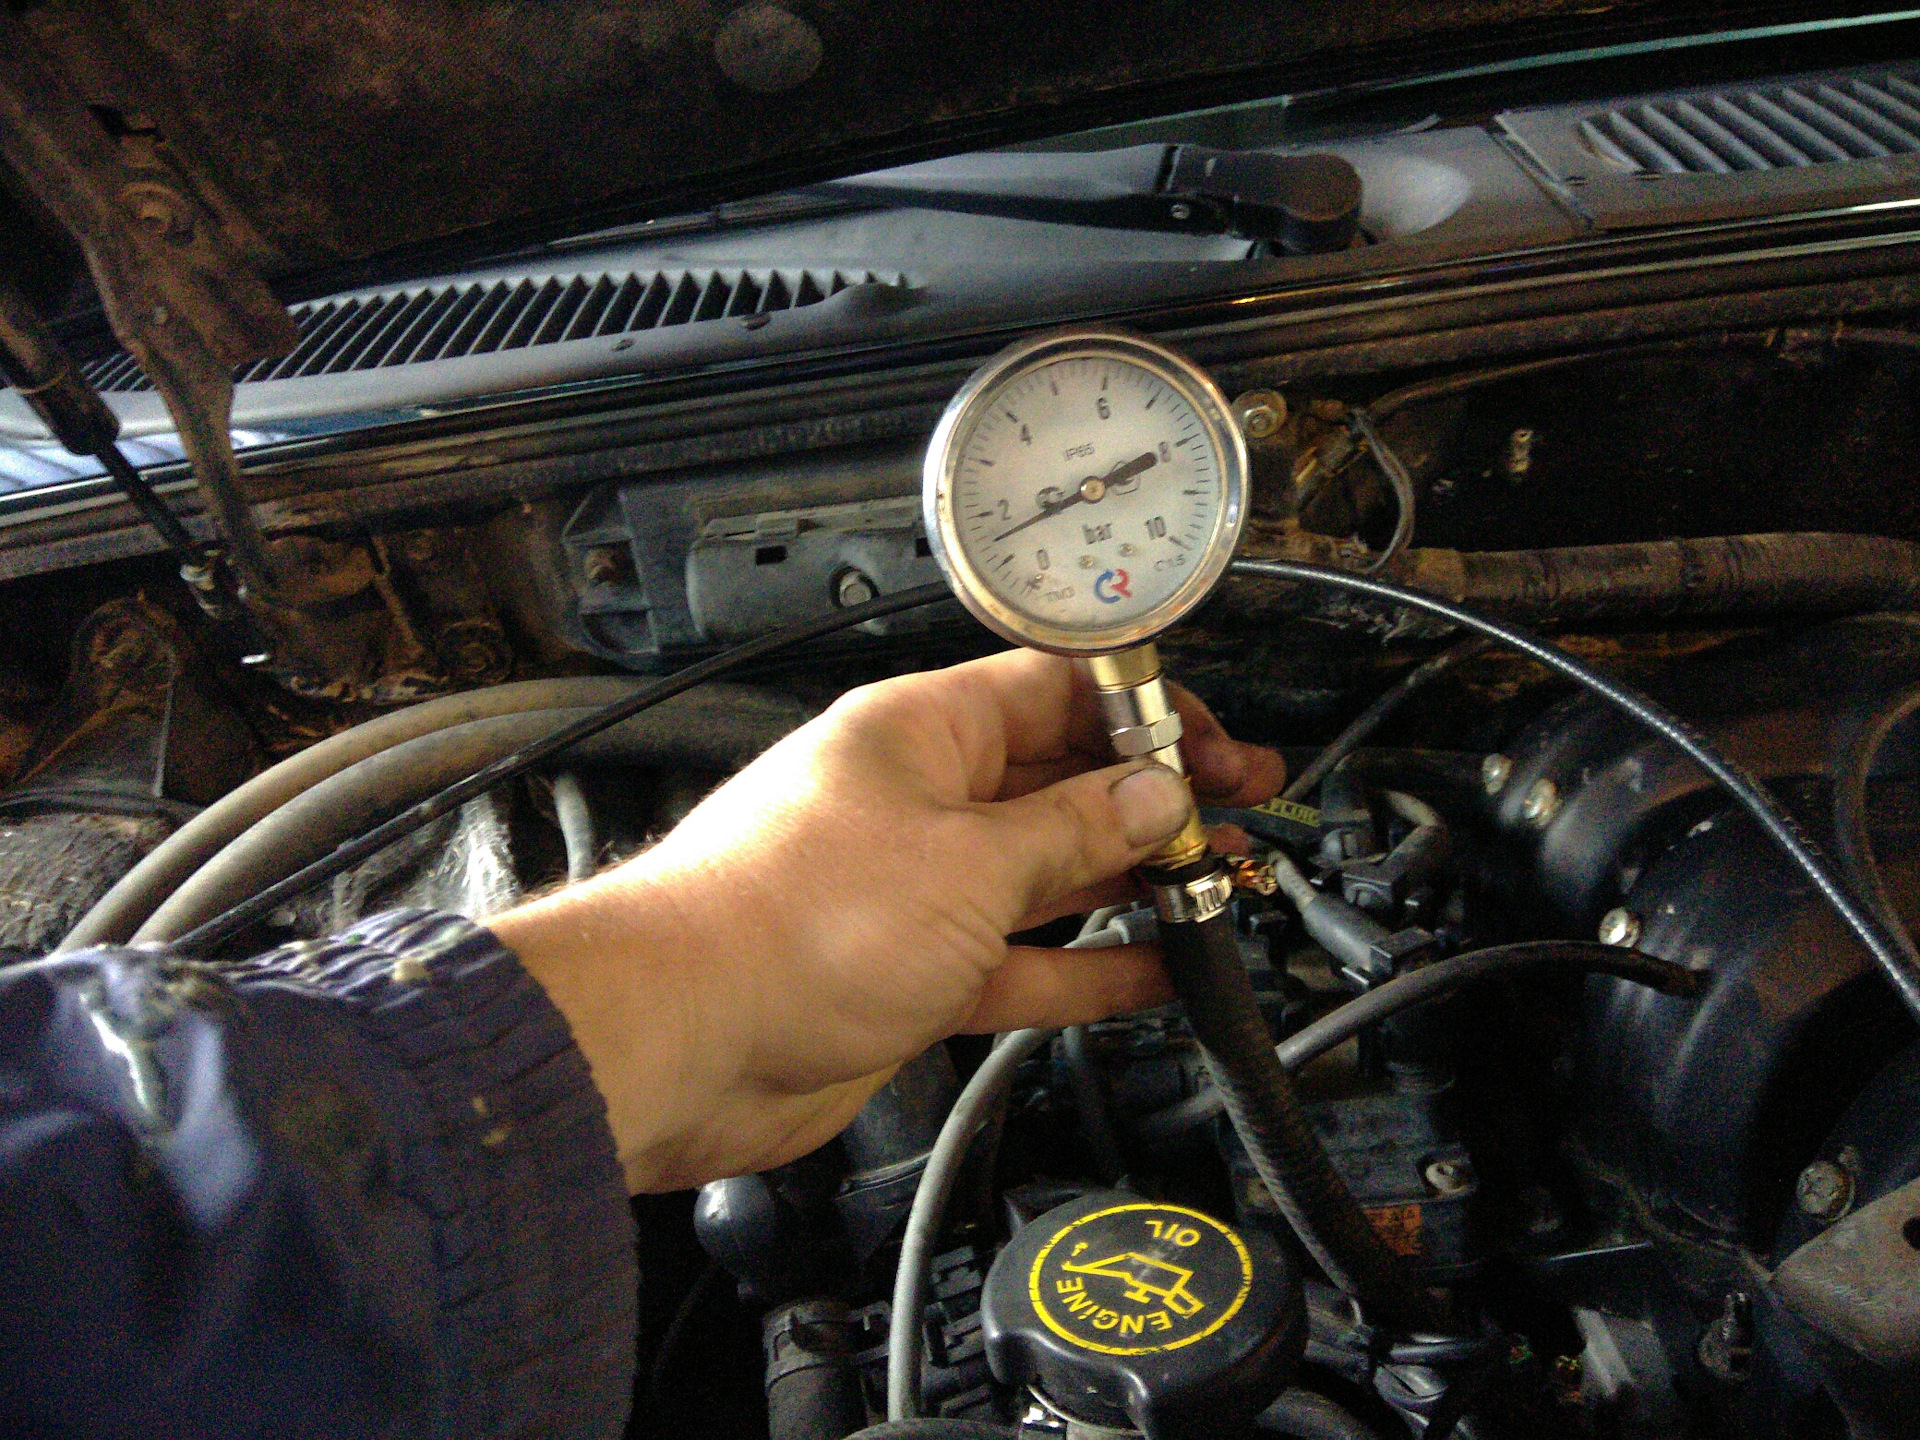 Скачет давление масла. Измерение давления топлива 2107. Замер давления топлива Форд Транзит дизель. Манометр для измерения давления топлива дизельного двигателя Скания. Форд галакси 2 литра дизель давление в топливной рампе.